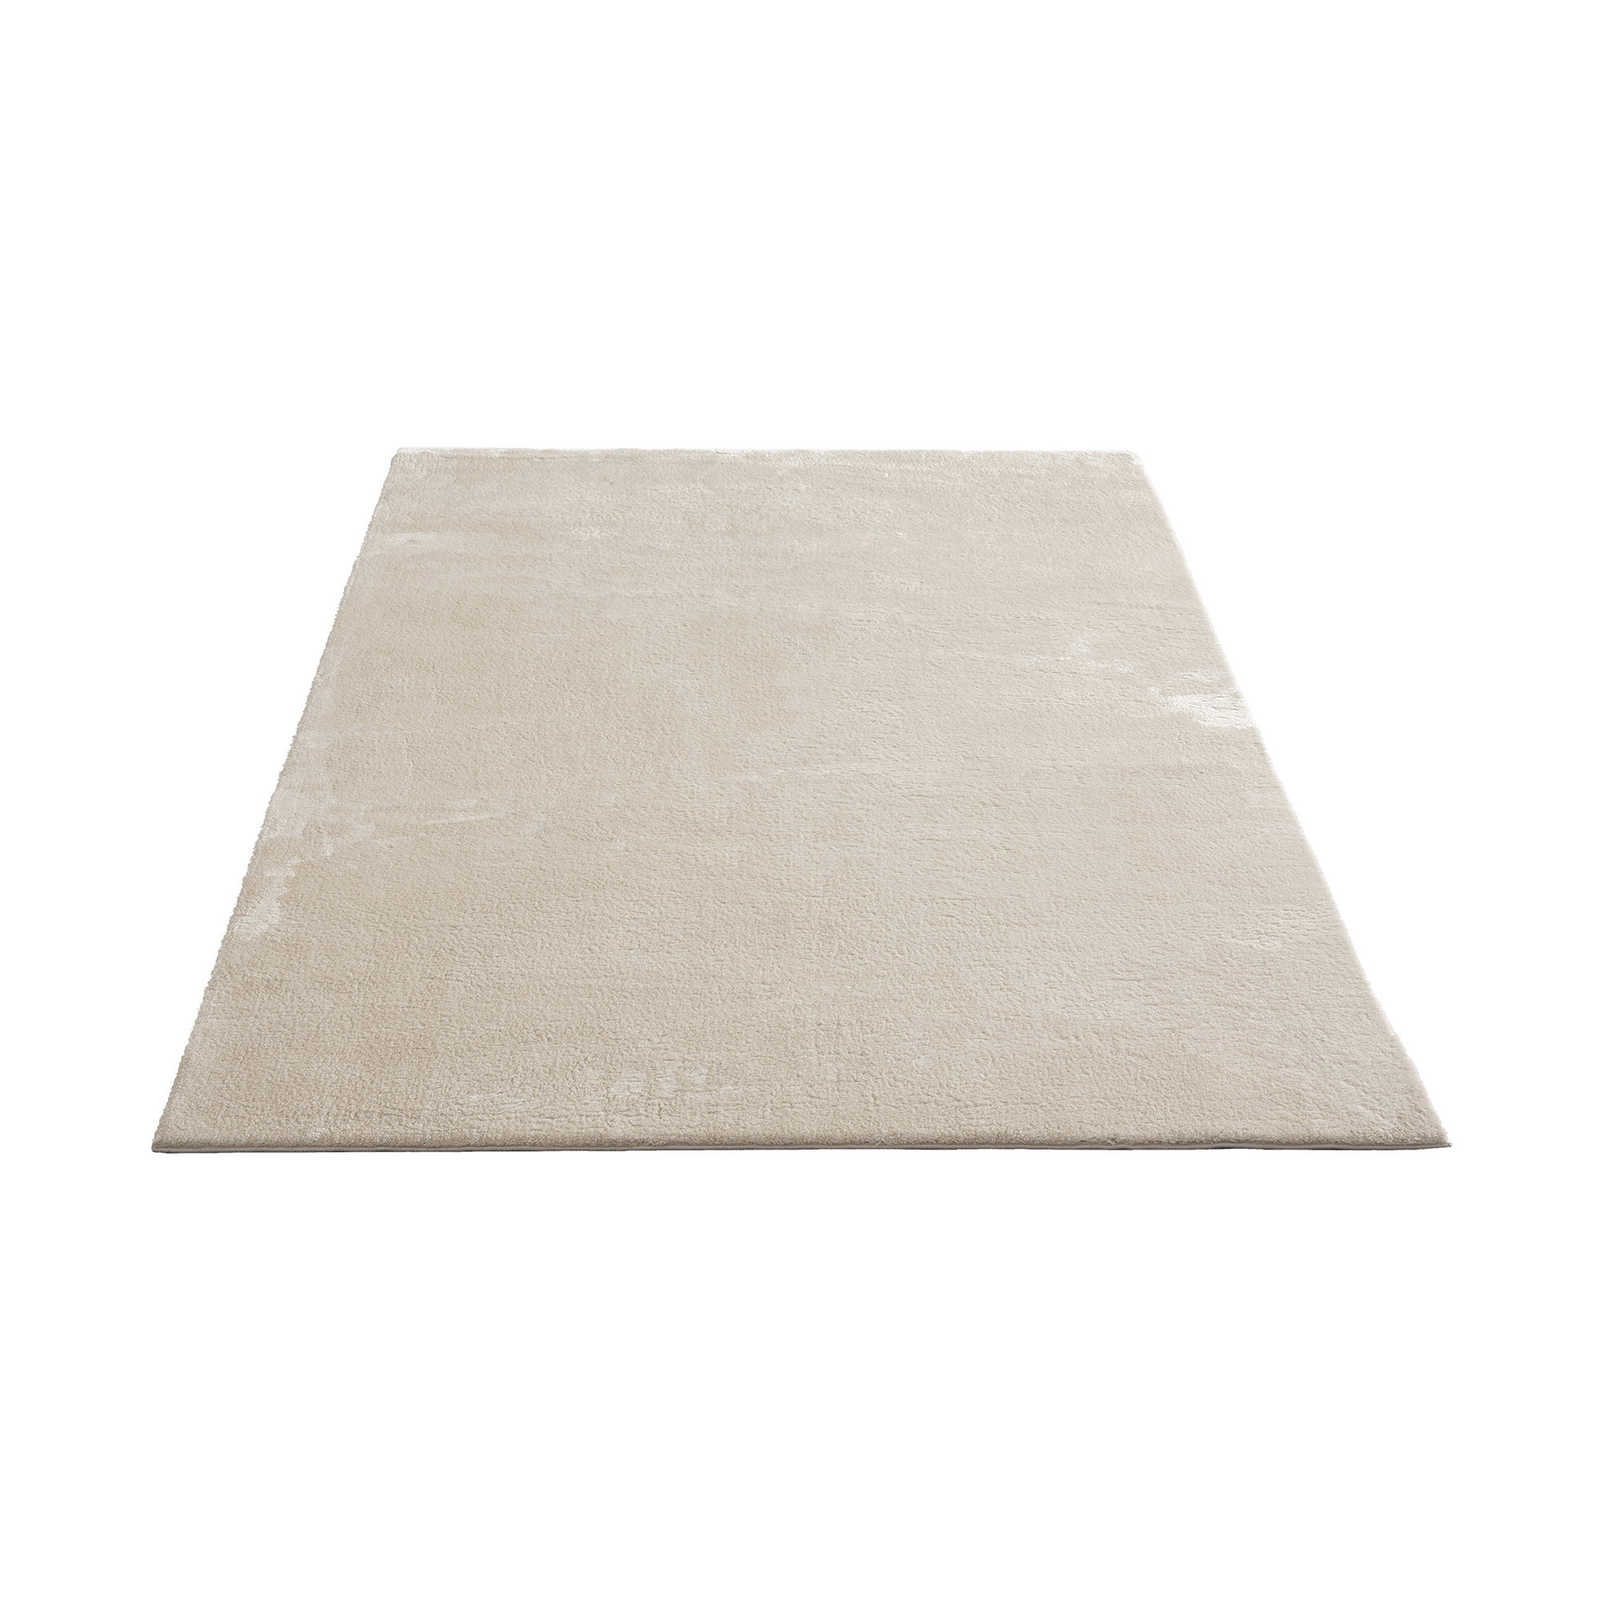 Zacht hoogpolig tapijt in beige - 290 x 200 cm
